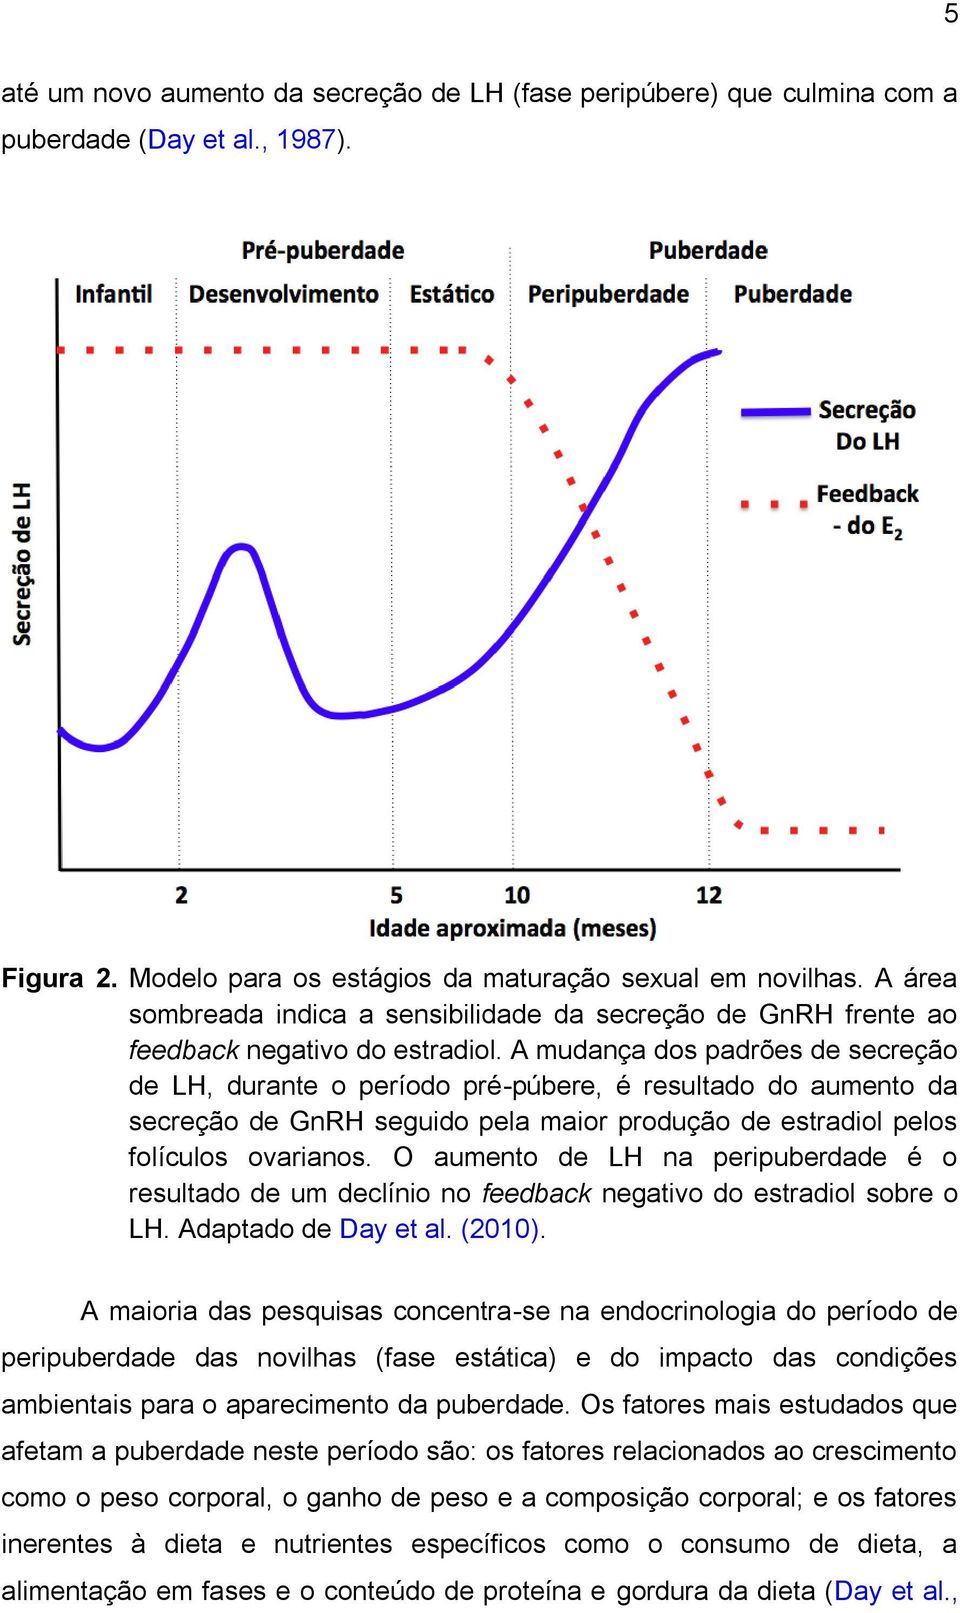 A mudança dos padrões de secreção de LH, durante o período pré-púbere, é resultado do aumento da secreção de GnRH seguido pela maior produção de estradiol pelos folículos ovarianos.